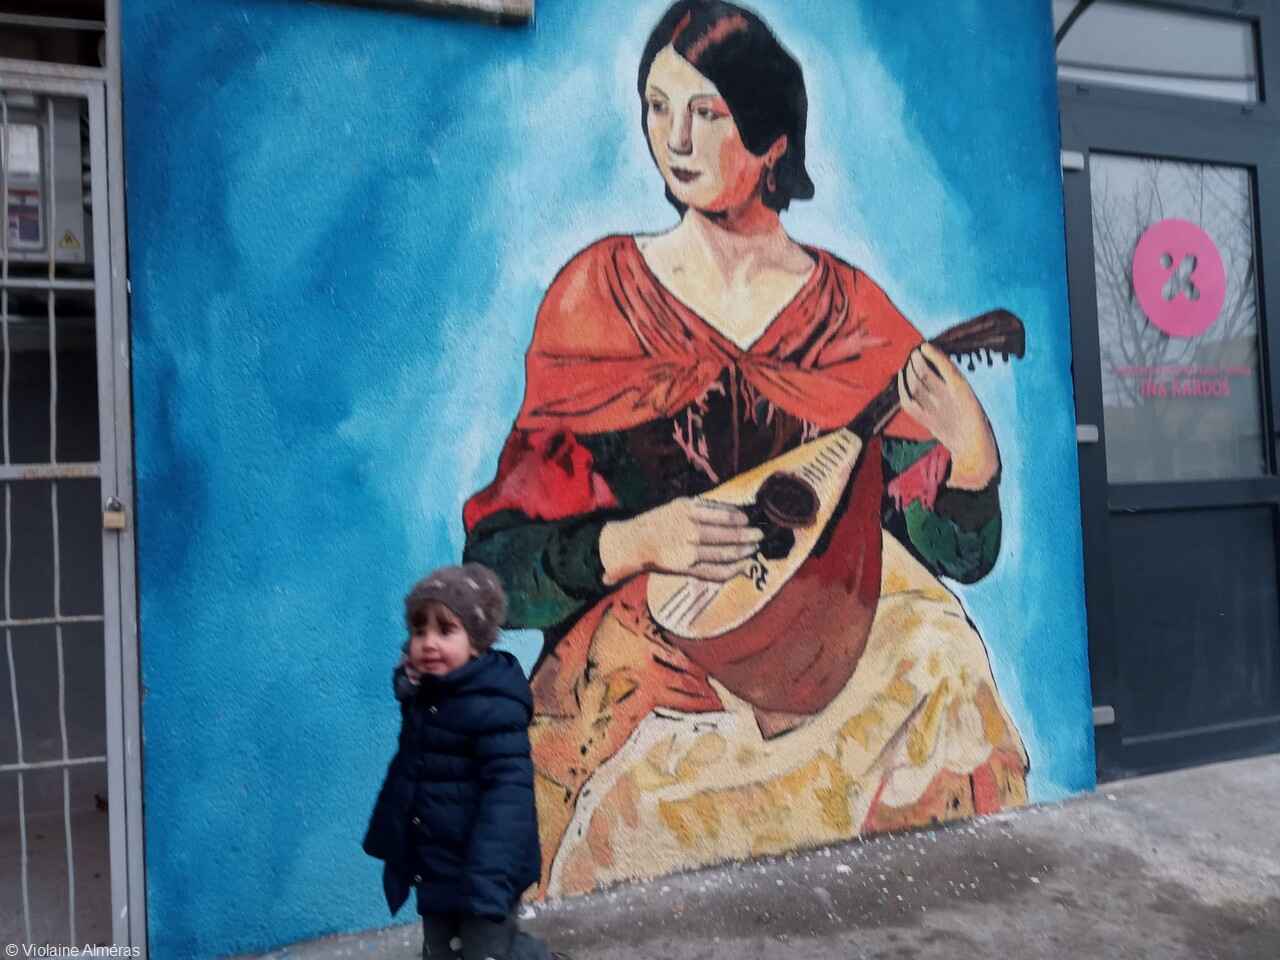 karlovac street art Femme romaine jouant de la musique